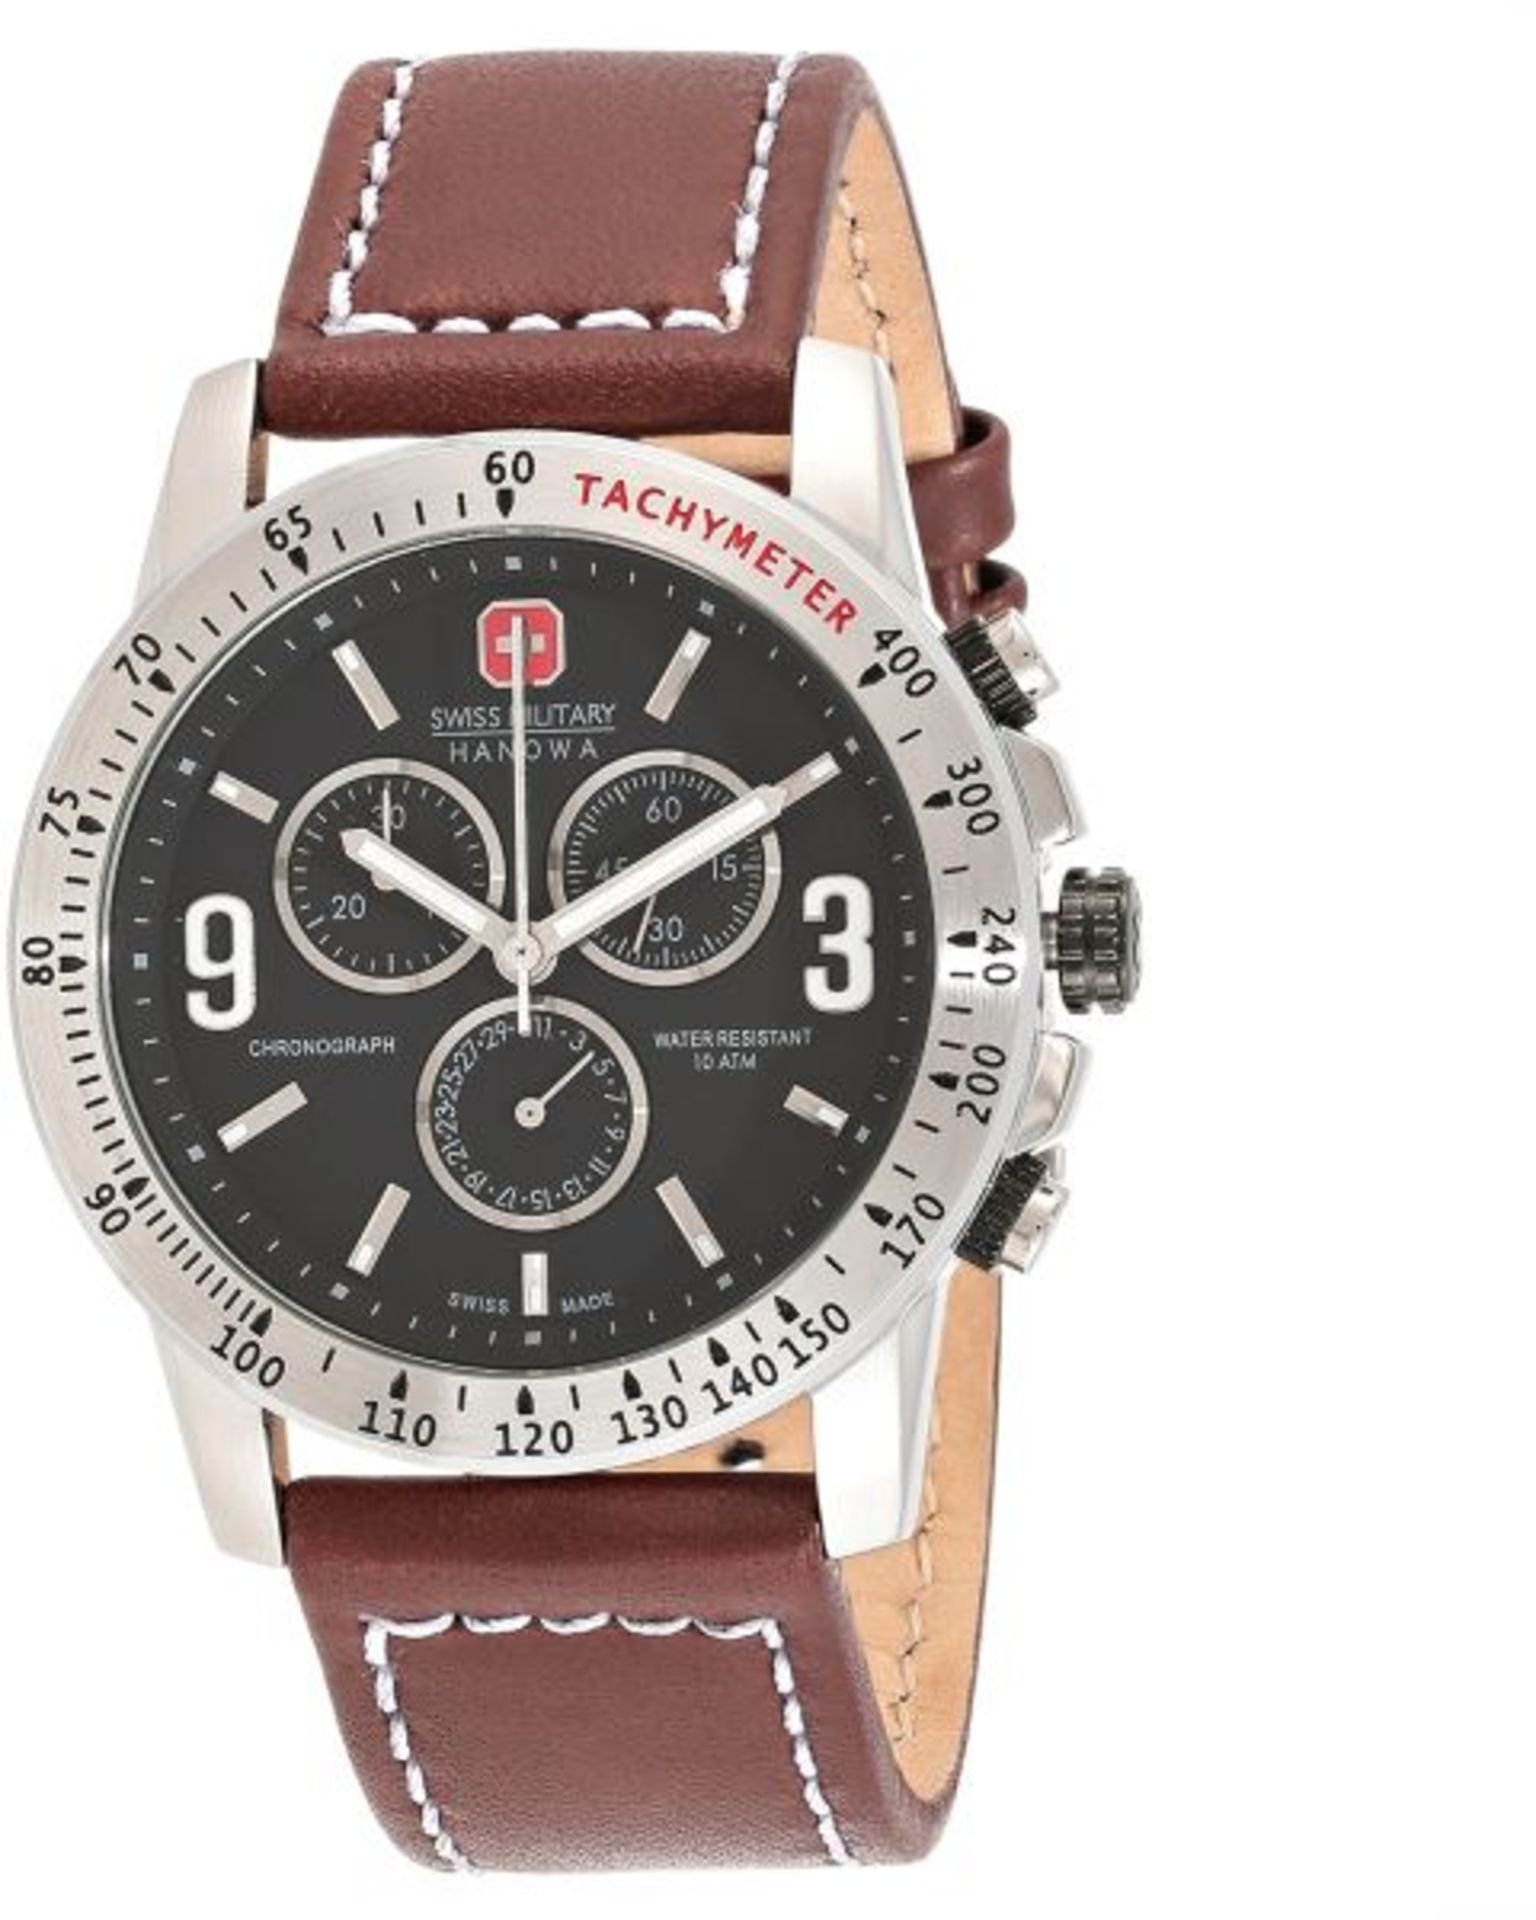 Brand New Swiss Military 06-4267.04.007 Designer Watch RRP £499